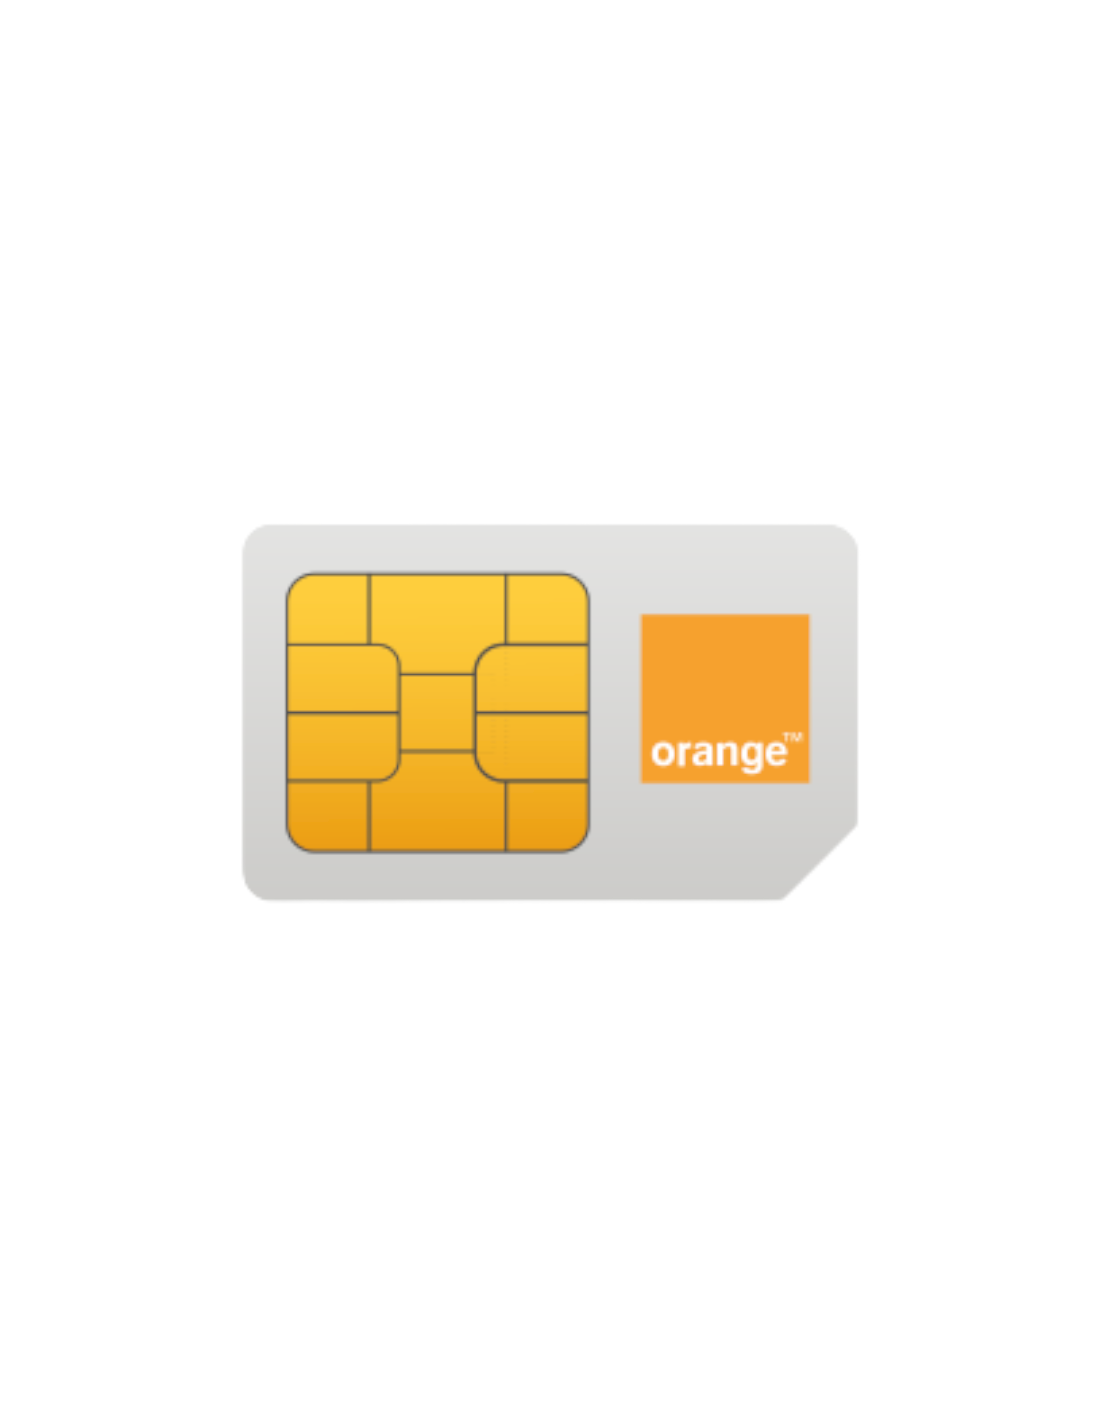 Carte SIM prépayée Orange : comment l'obtenir et la recharger ?